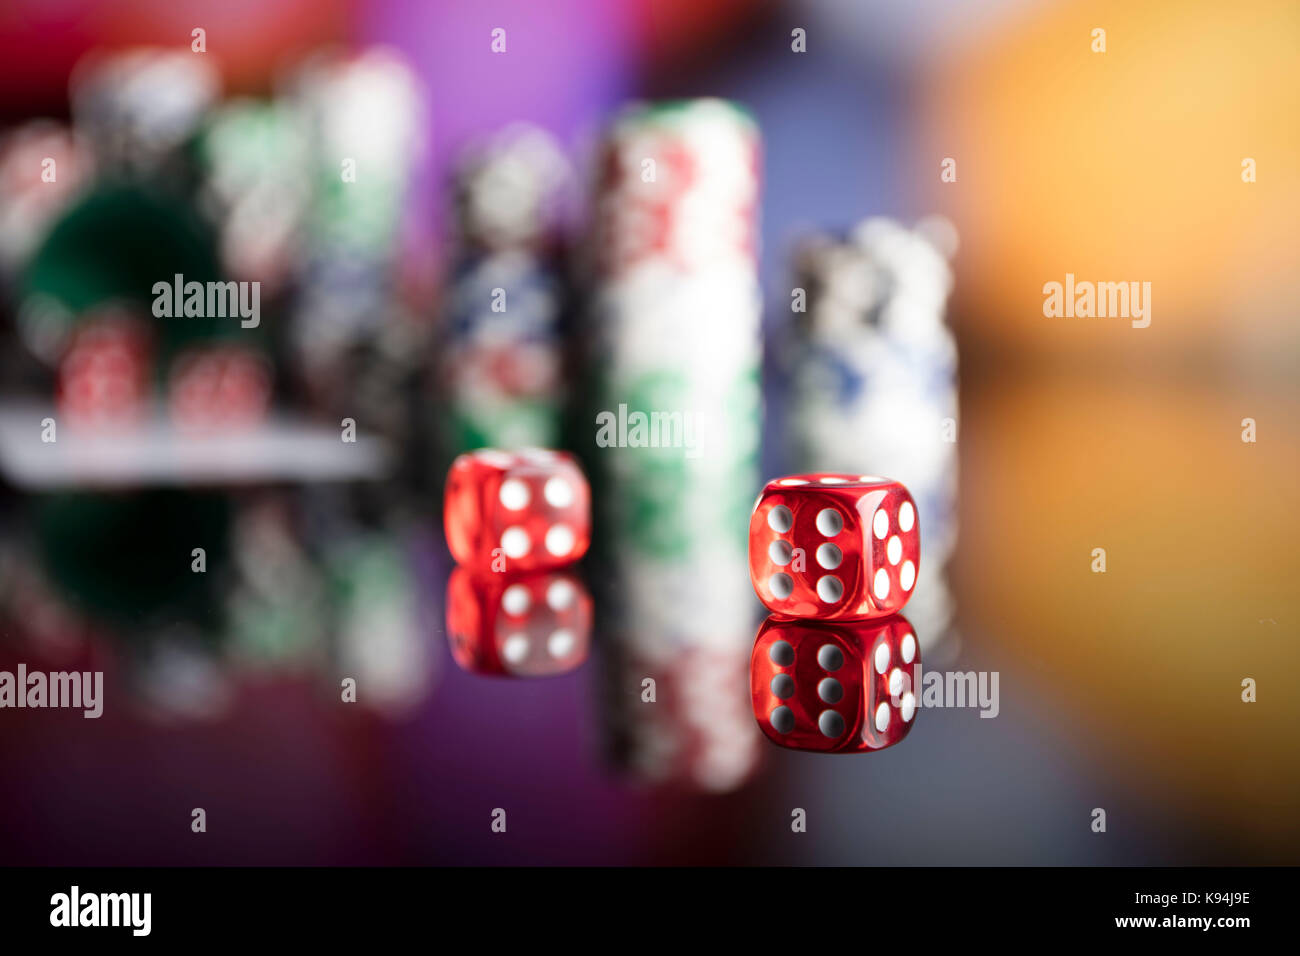 Casino Thema. Kontrastreiches Bild von casino Roulette, Poker Spiel, Würfelspiel, poker chips auf einem Spieltisch, alle auf bunten bokeh Hintergrund. Stockfoto